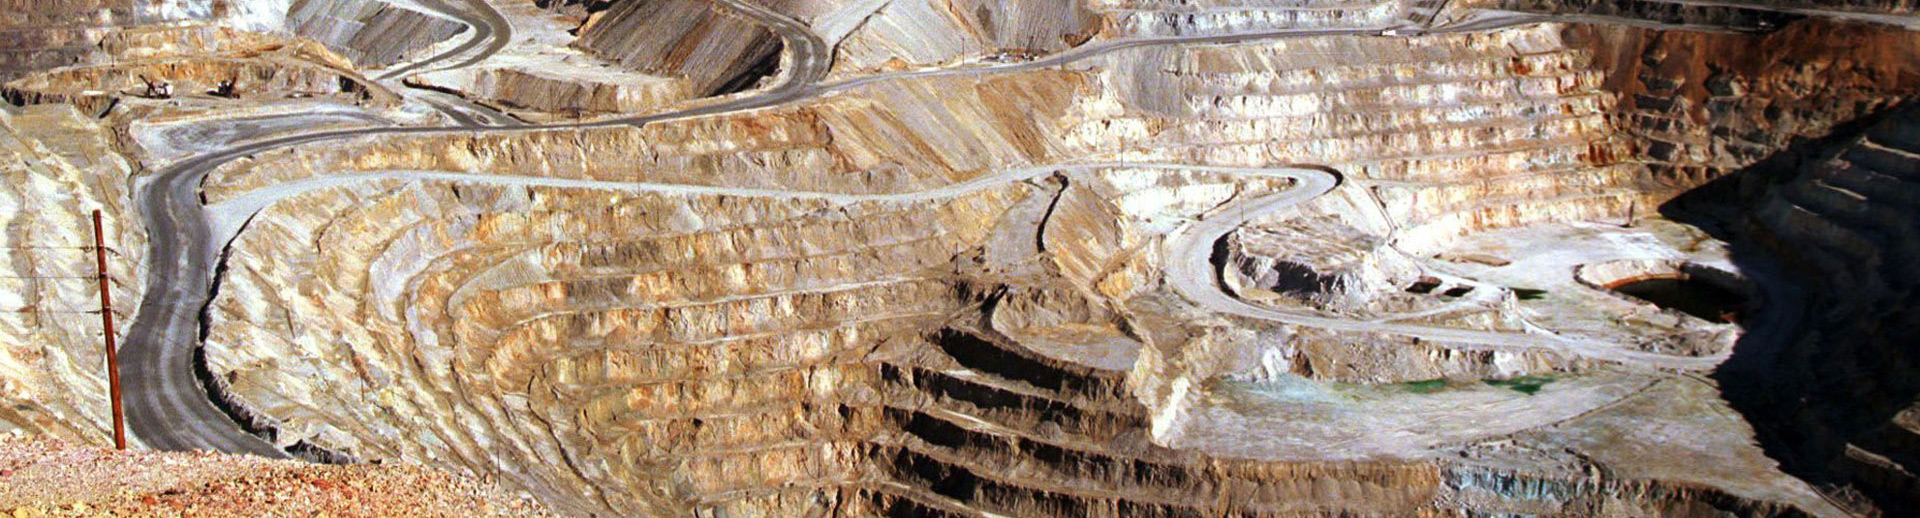 Strumenti di roccia nell'estrazione mineraria